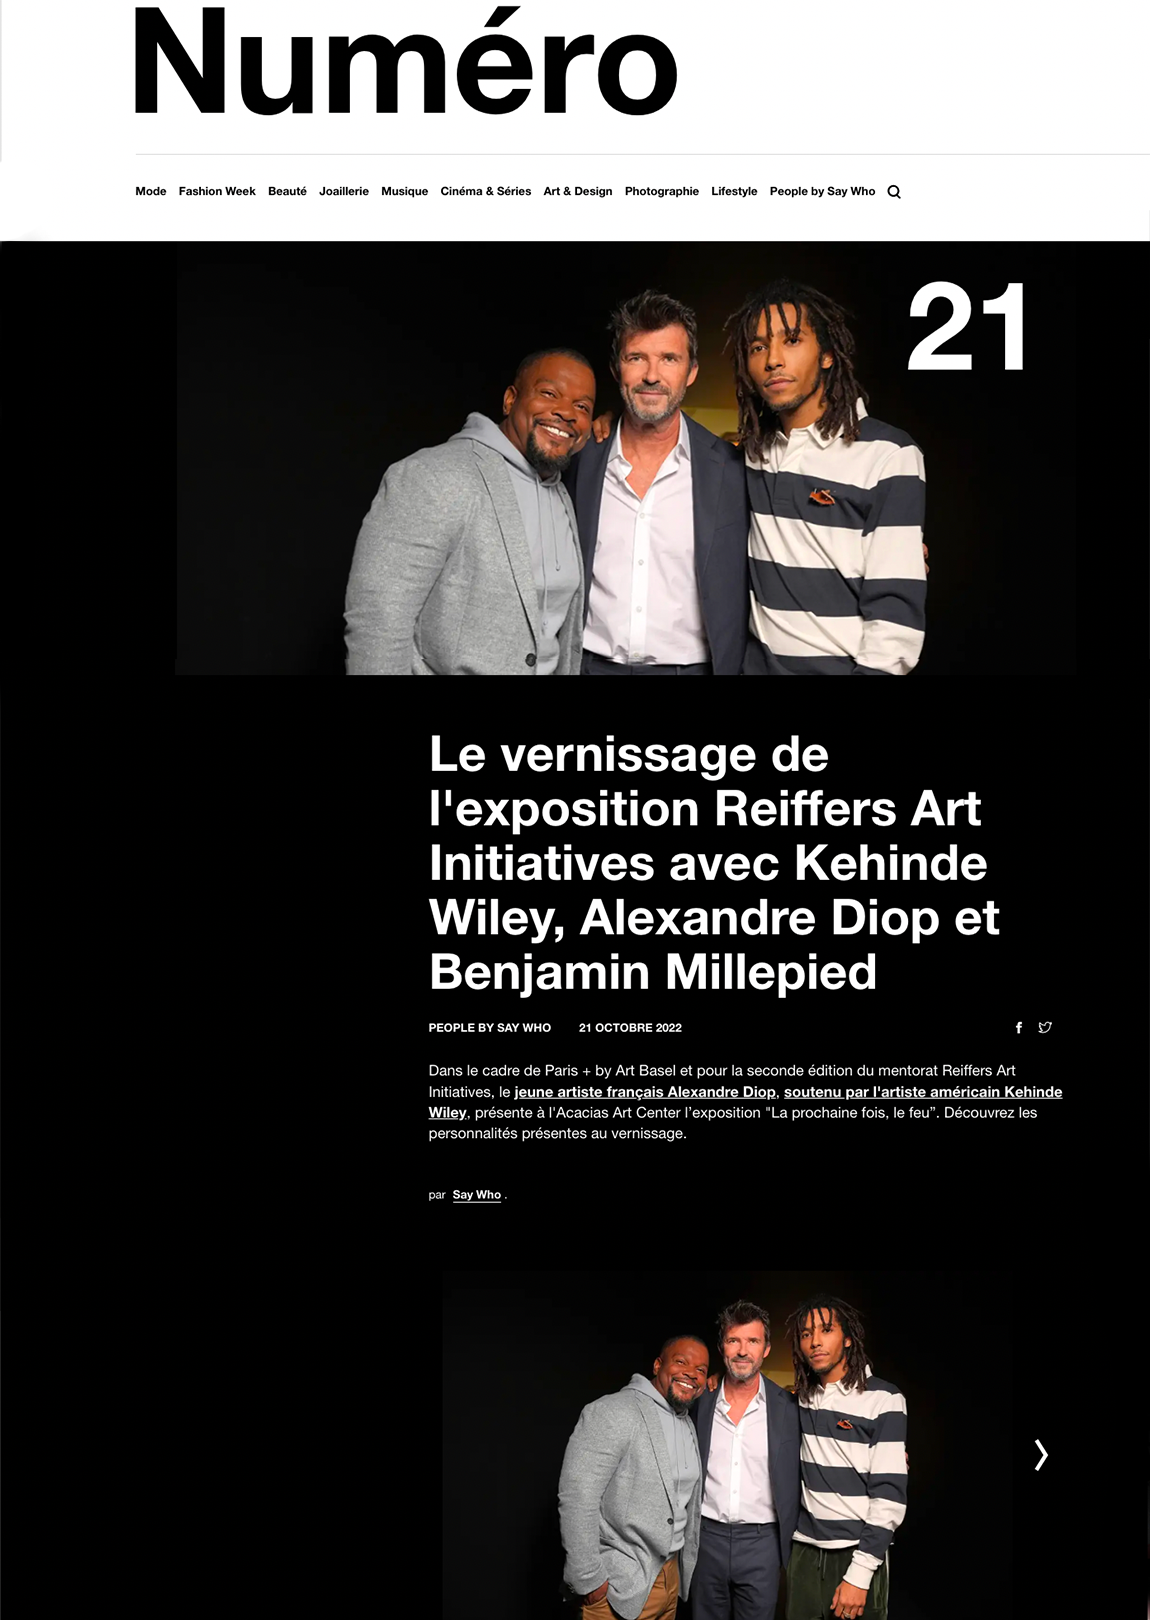 Le vernissage de l'exposition Reiffers Art Initiatives avec Kehinde Wiley, Alexandre Diop et Benjamin Millepied